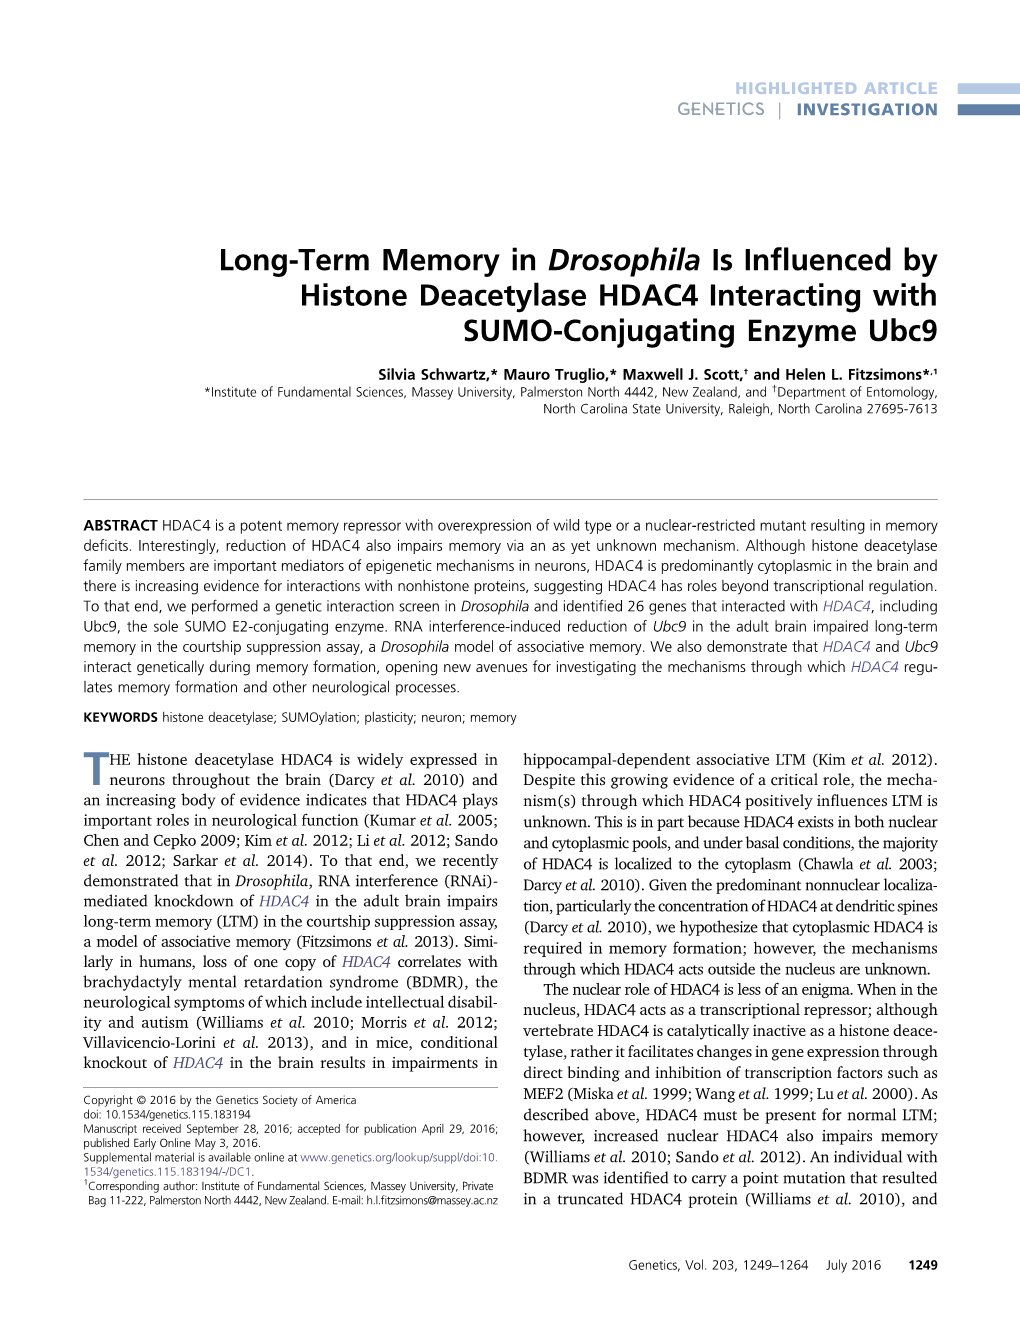 Long-Term Memory in Drosophila Is Influenced by Histone Deacetylase